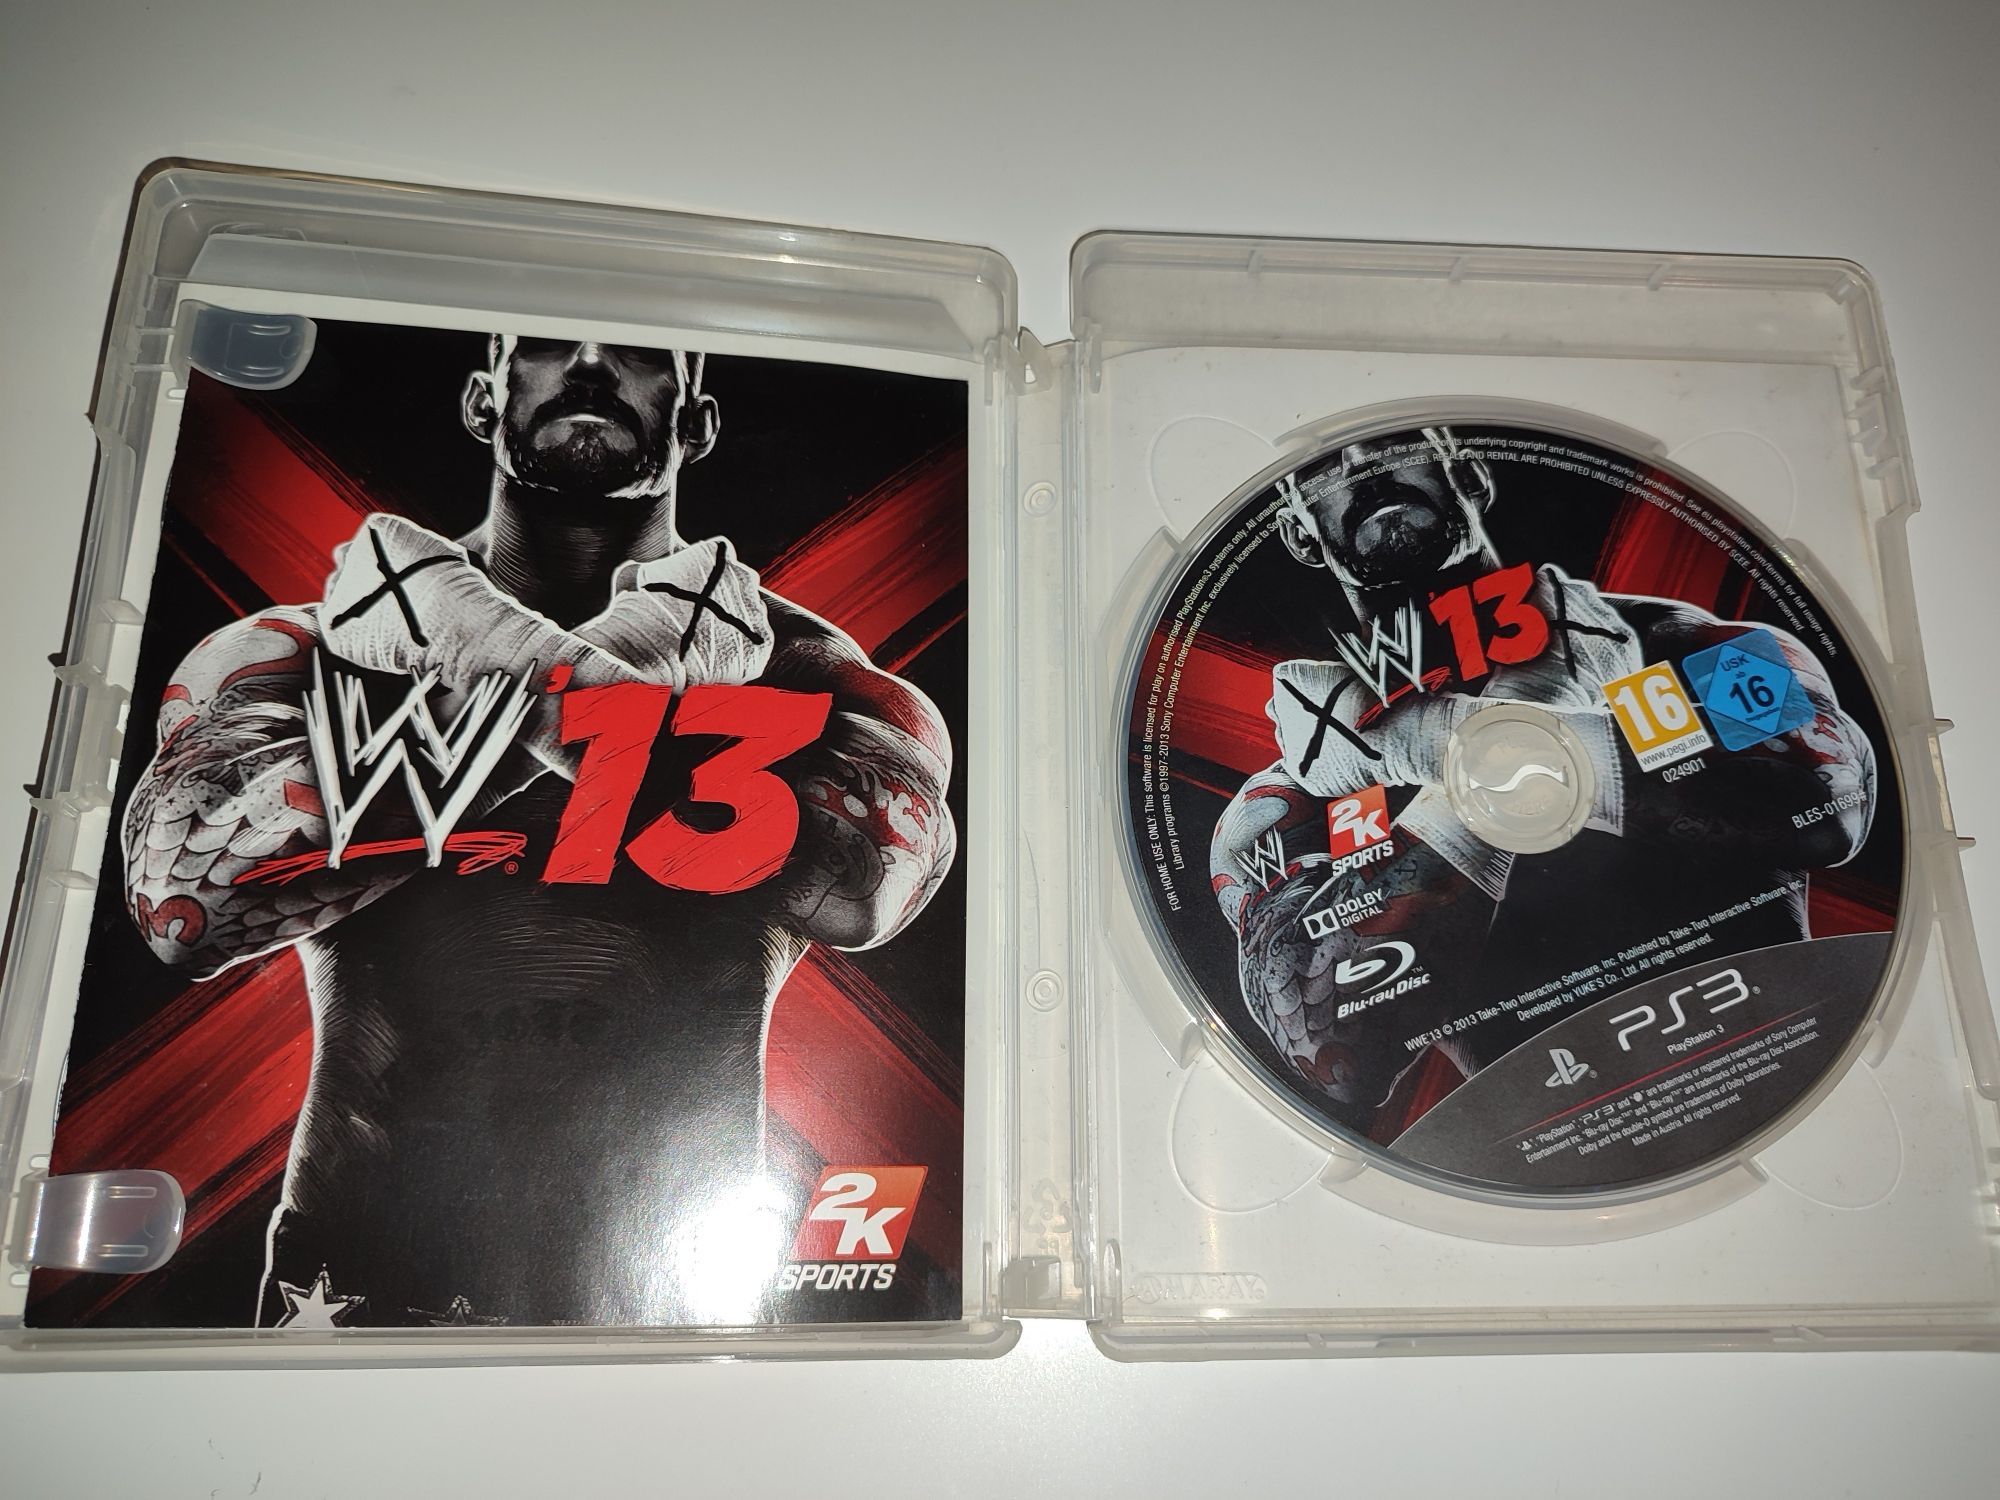 Gra Ps3 Wwe2k13 W13 WWE wrestling zapasy UFC gry PlayStation 3 Hit GTA